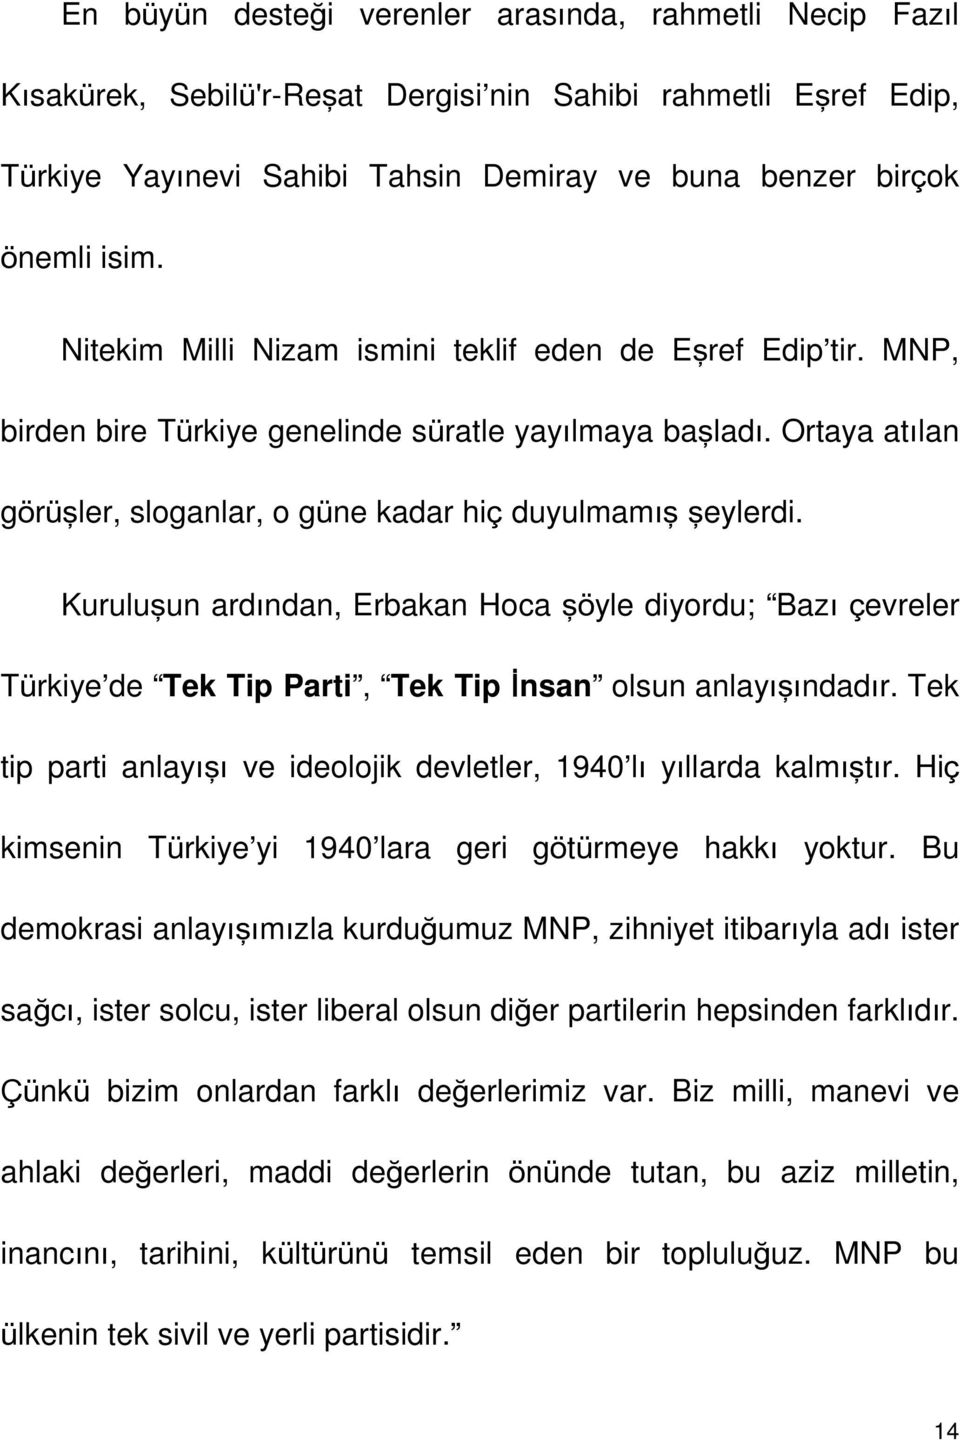 Kuruluşun ardından, Erbakan Hoca şöyle diyordu; Bazı çevreler Türkiye de Tek Tip Parti, Tek Tip İnsan olsun anlayışındadır. Tek tip parti anlayışı ve ideolojik devletler, 1940 lı yıllarda kalmıştır.